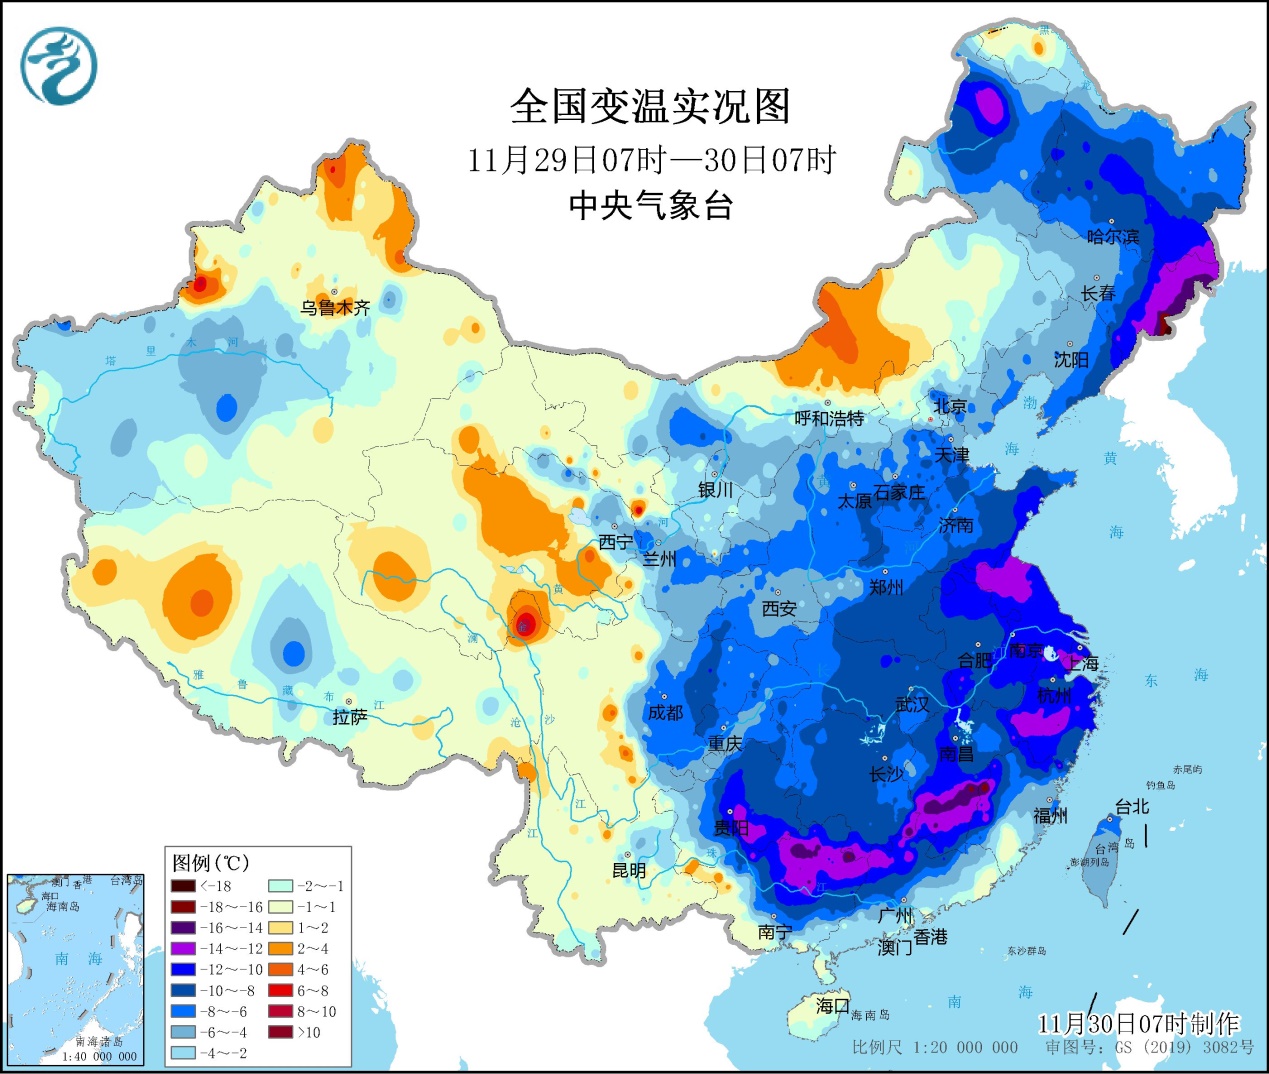 江苏安徽等地出现降雪 寒潮今天继续影响长江以南  